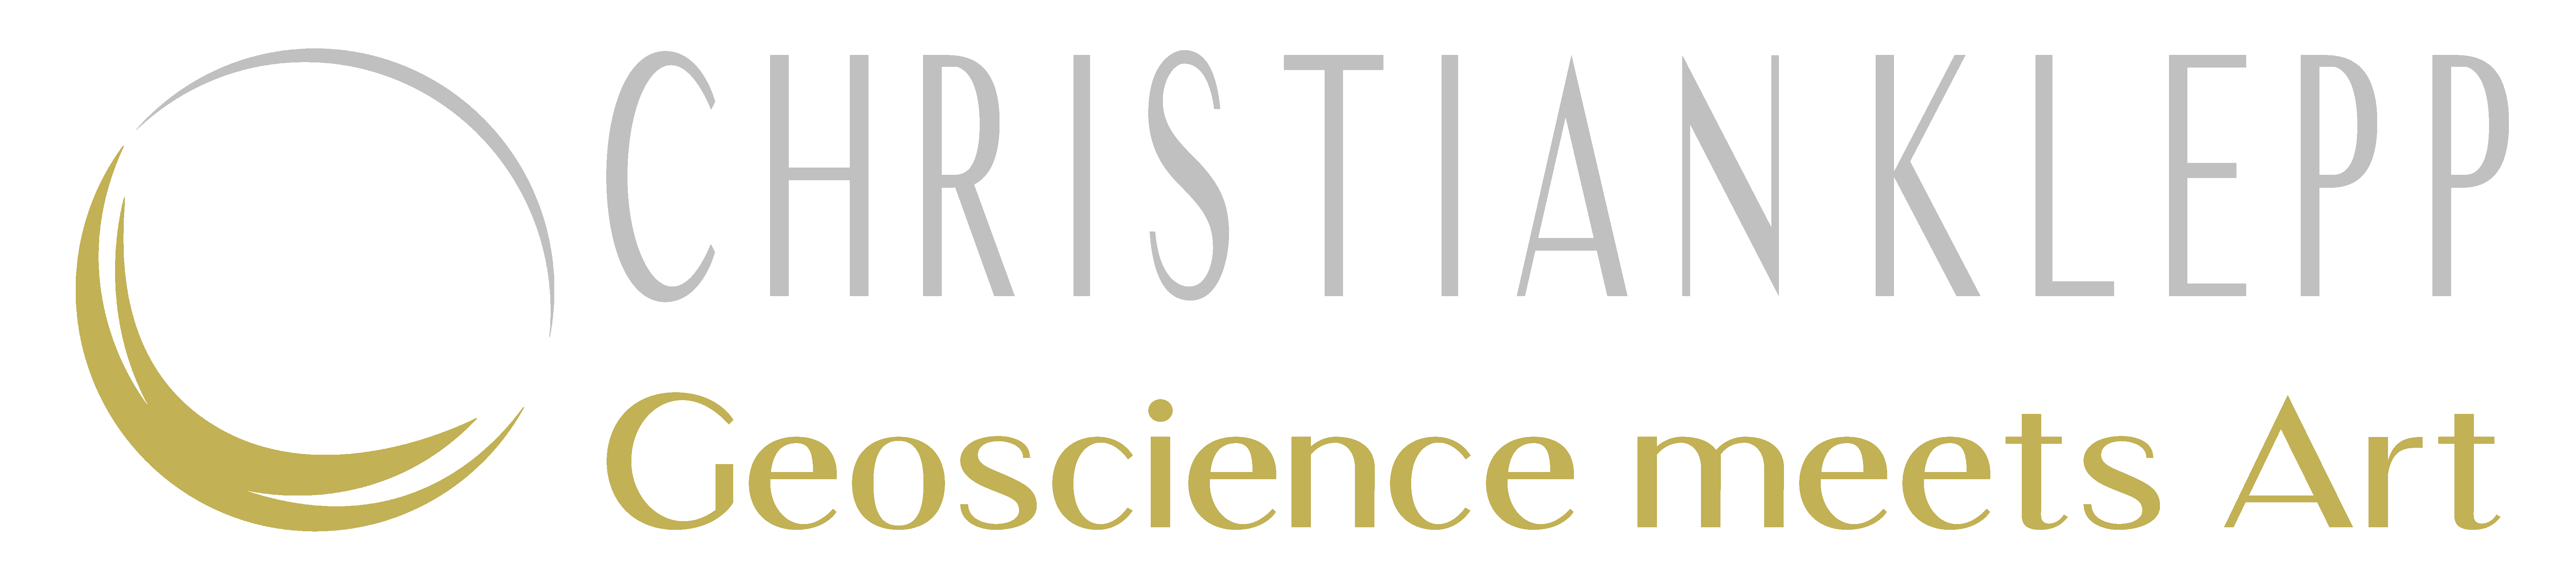 Christian Klepp - Geoscience meets Art - Logo